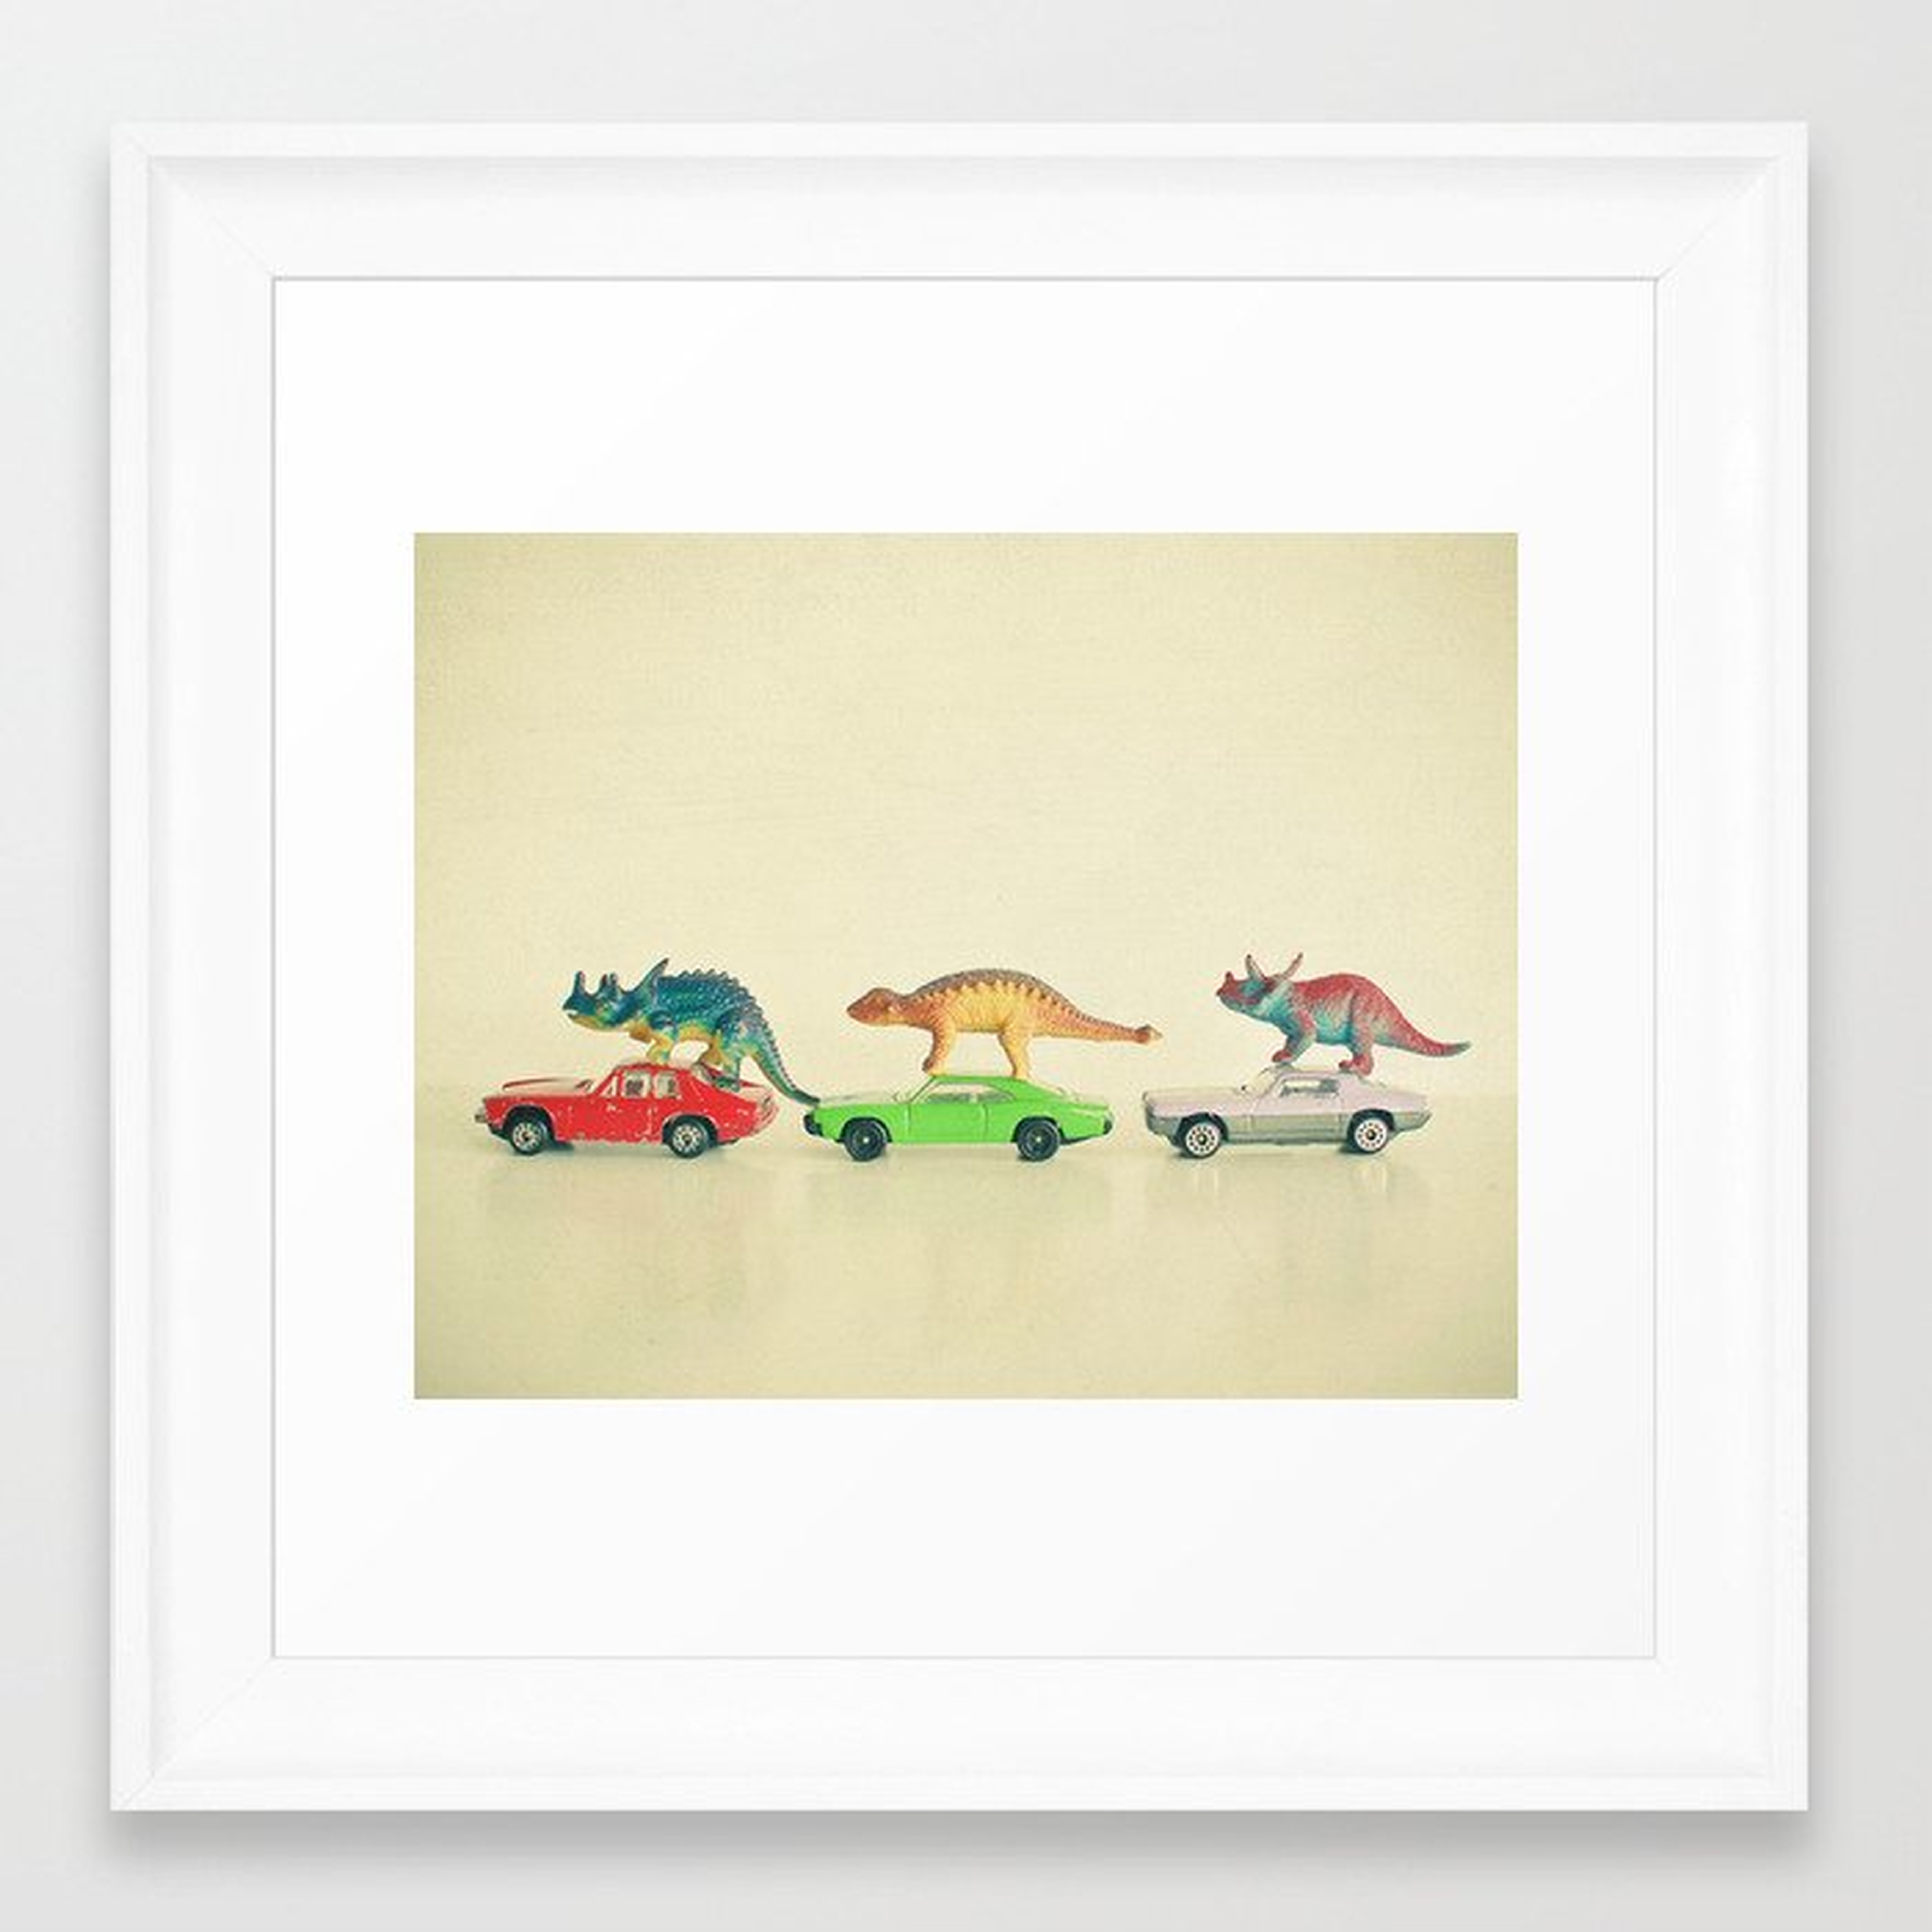 Dinosaurs Ride Cars Framed Art Print - 12x12 - scoop white - Society6